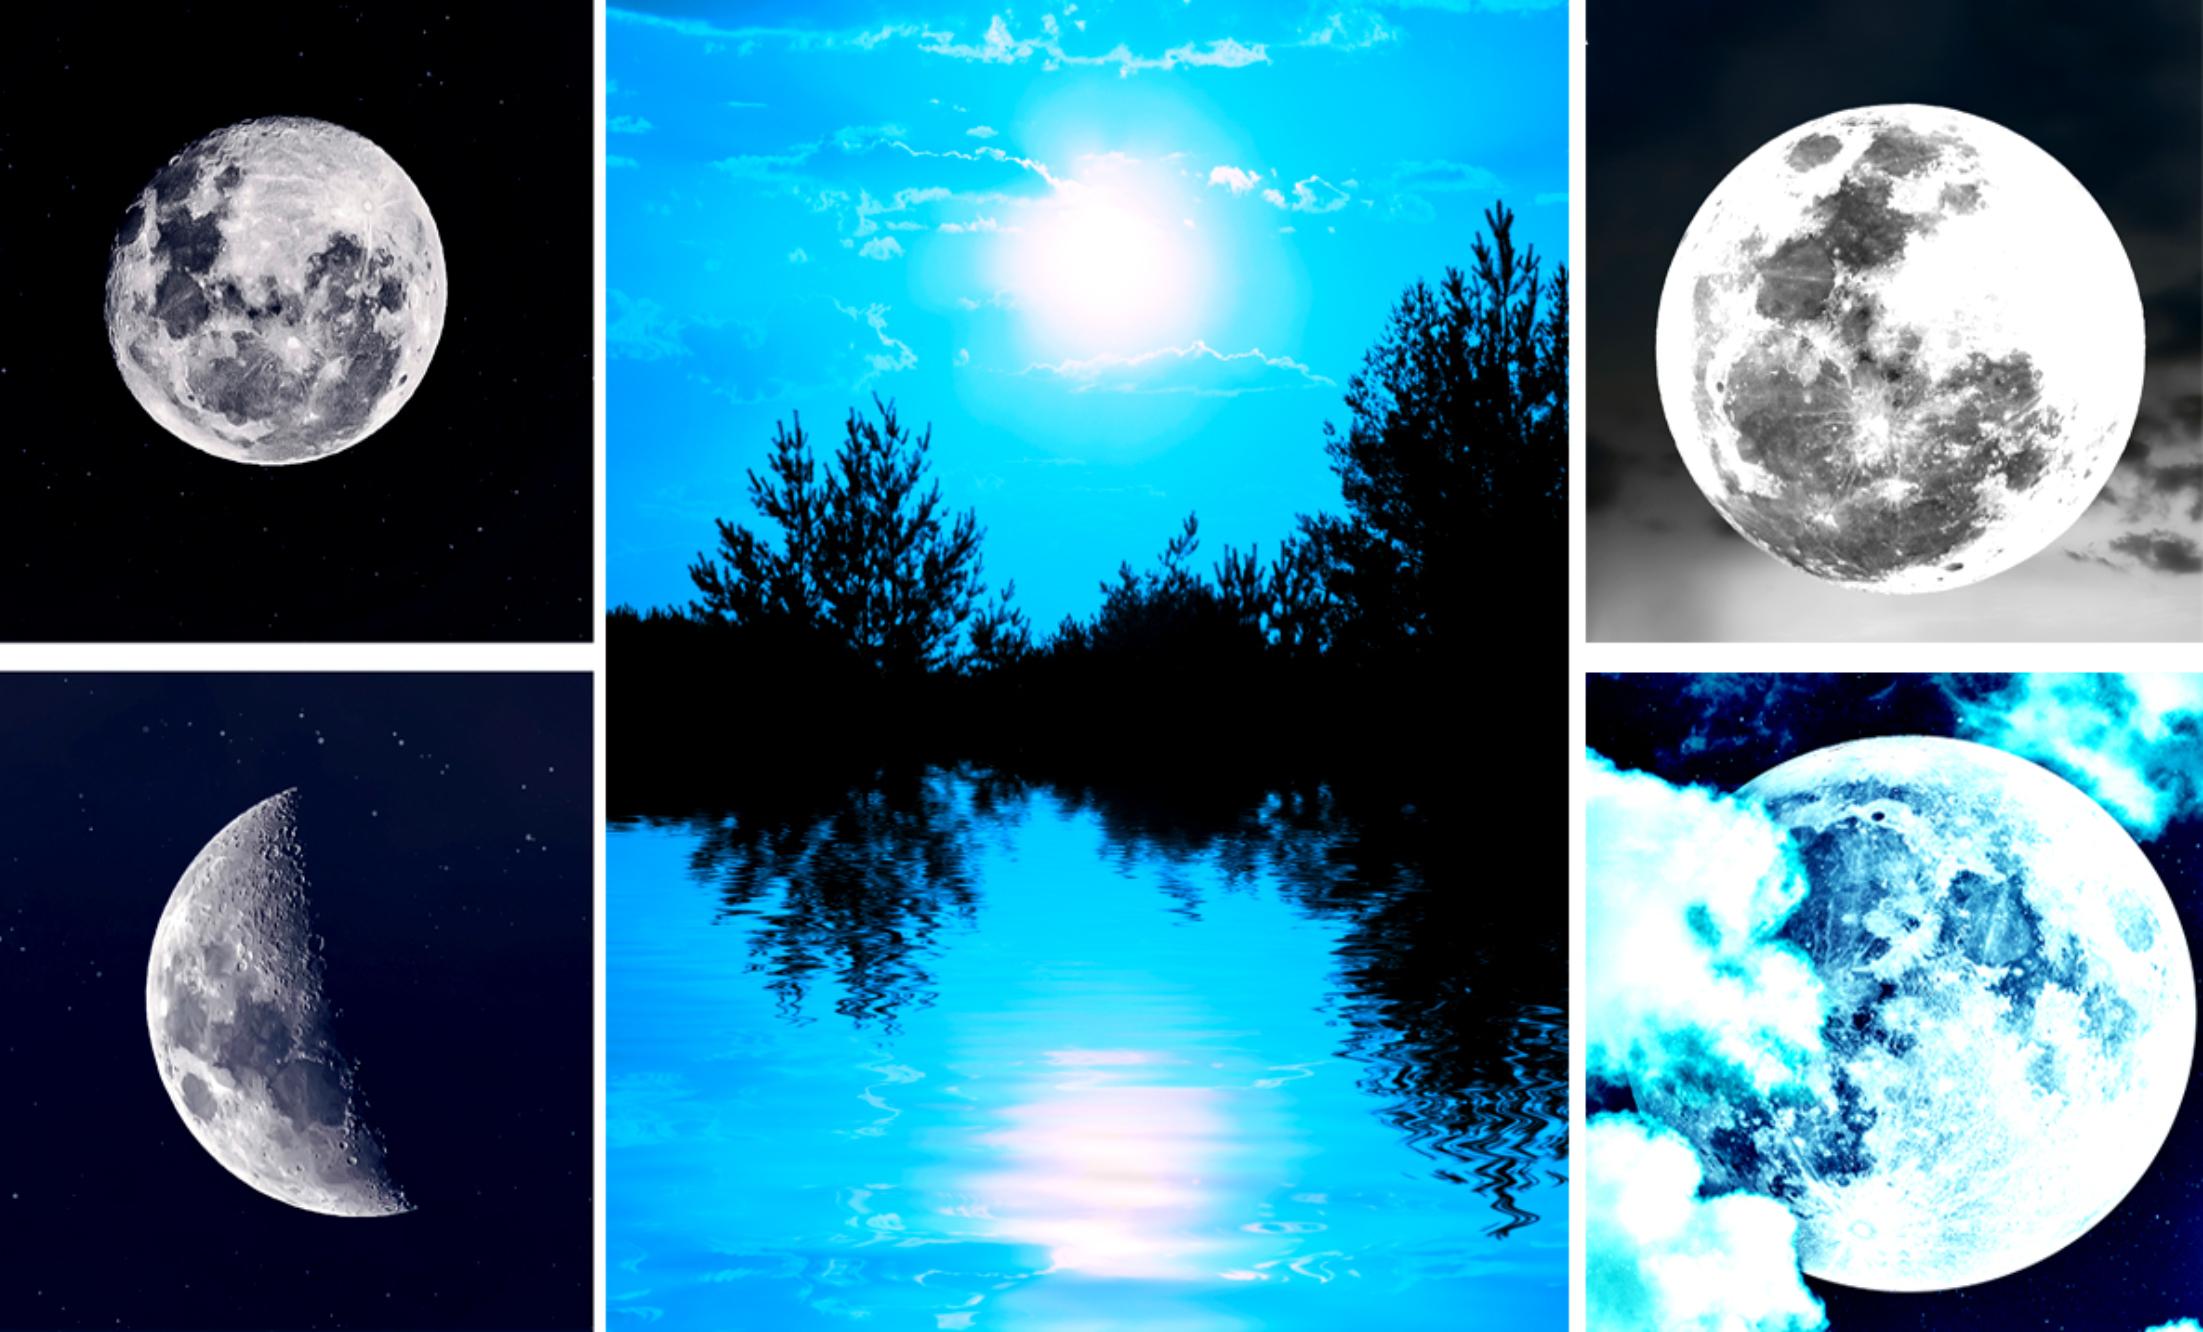 Ψυχολογικό τεστ: Διαλέξτε το φεγγάρι που σας εκφράζει περισσότερο και δείτε τι βρίσκεται βαθιά κρυμμένο στο υποσυνείδητο σας